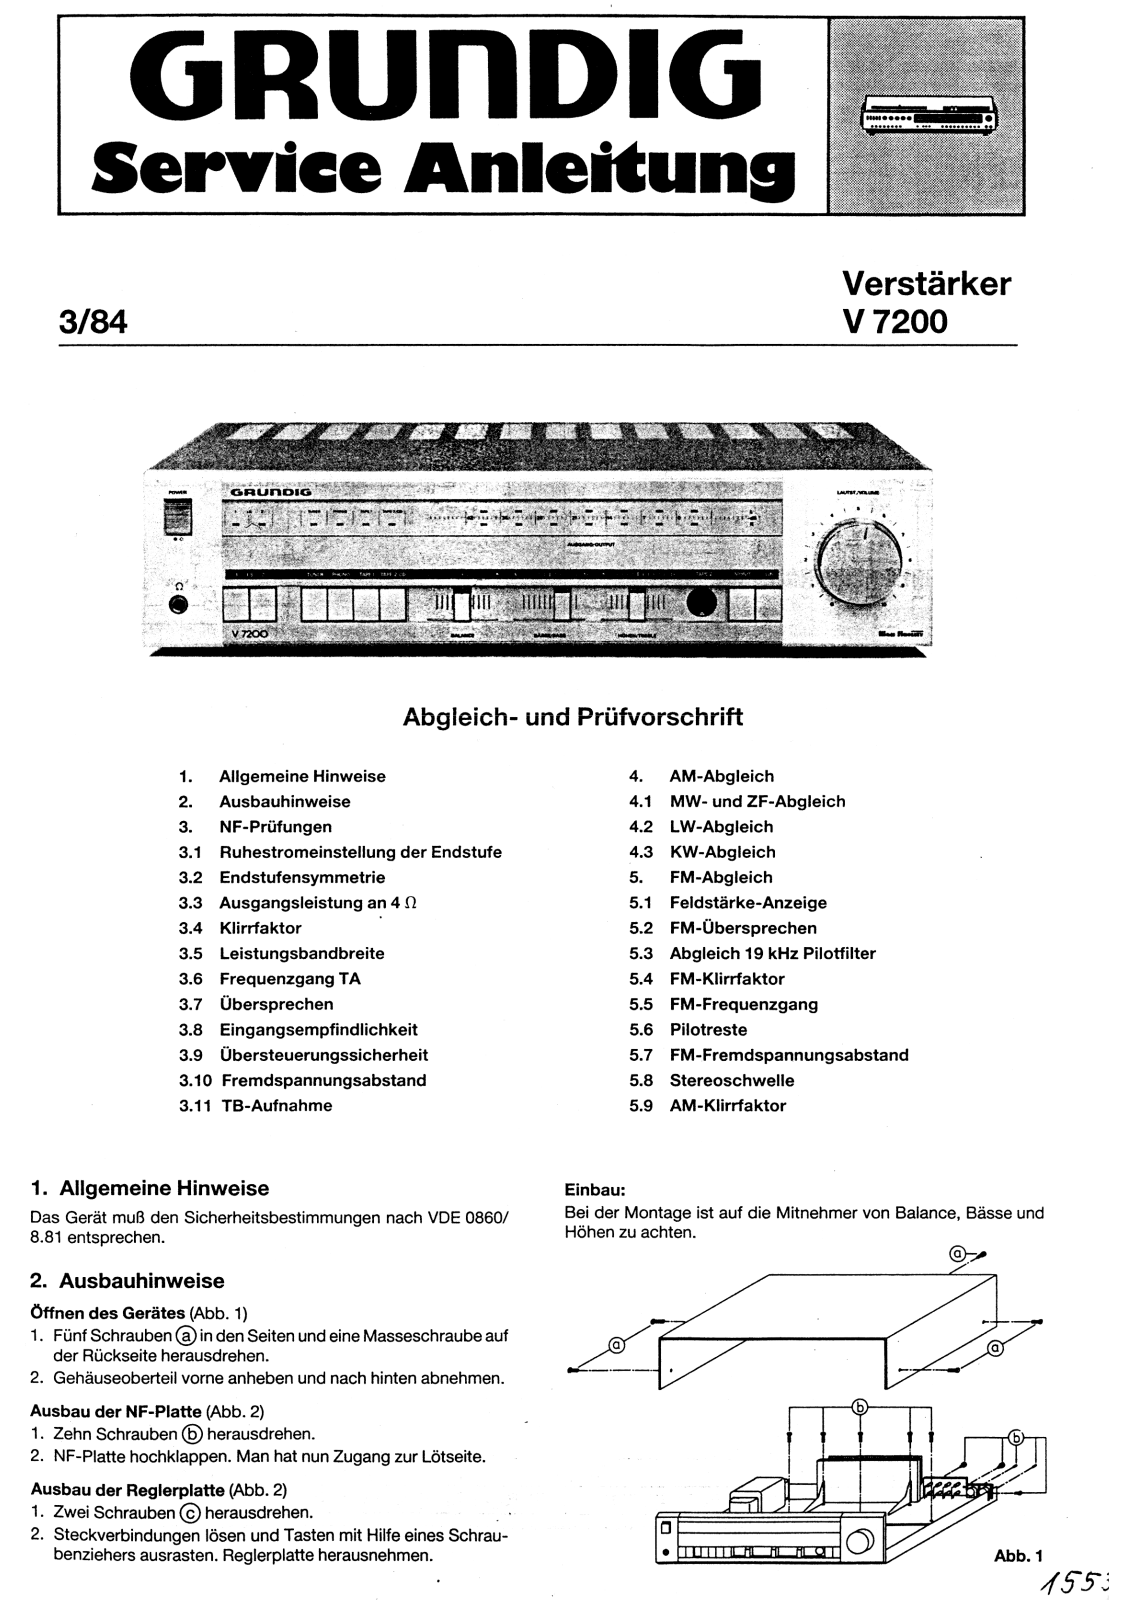 Service Manual-Anleitung für Grundig V 4 